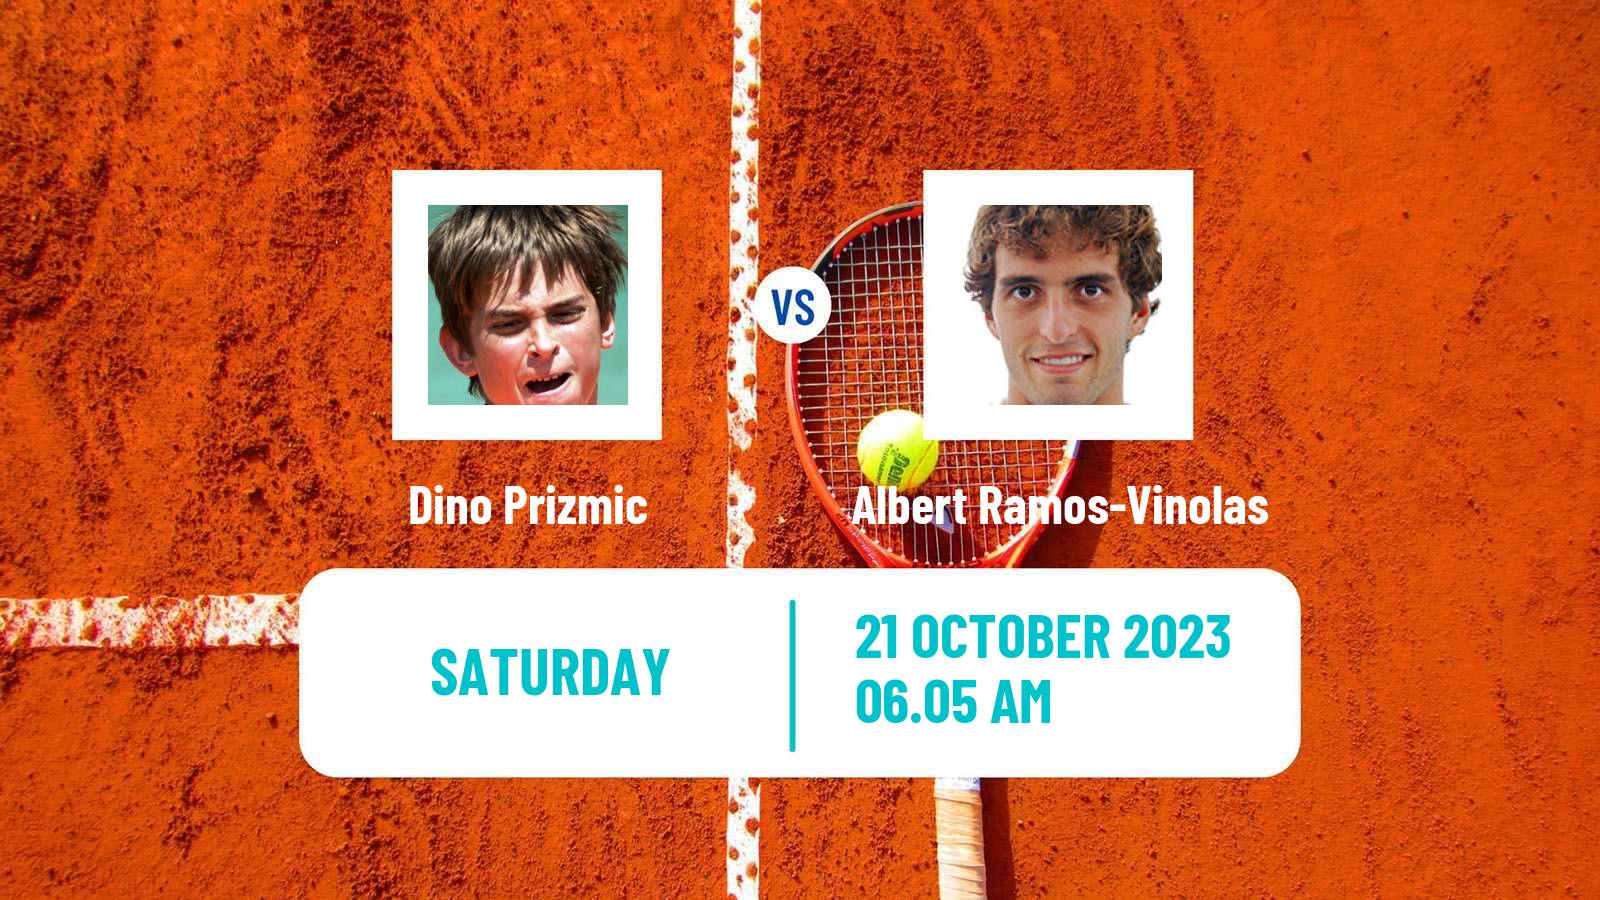 Tennis ATP Vienna Dino Prizmic - Albert Ramos-Vinolas